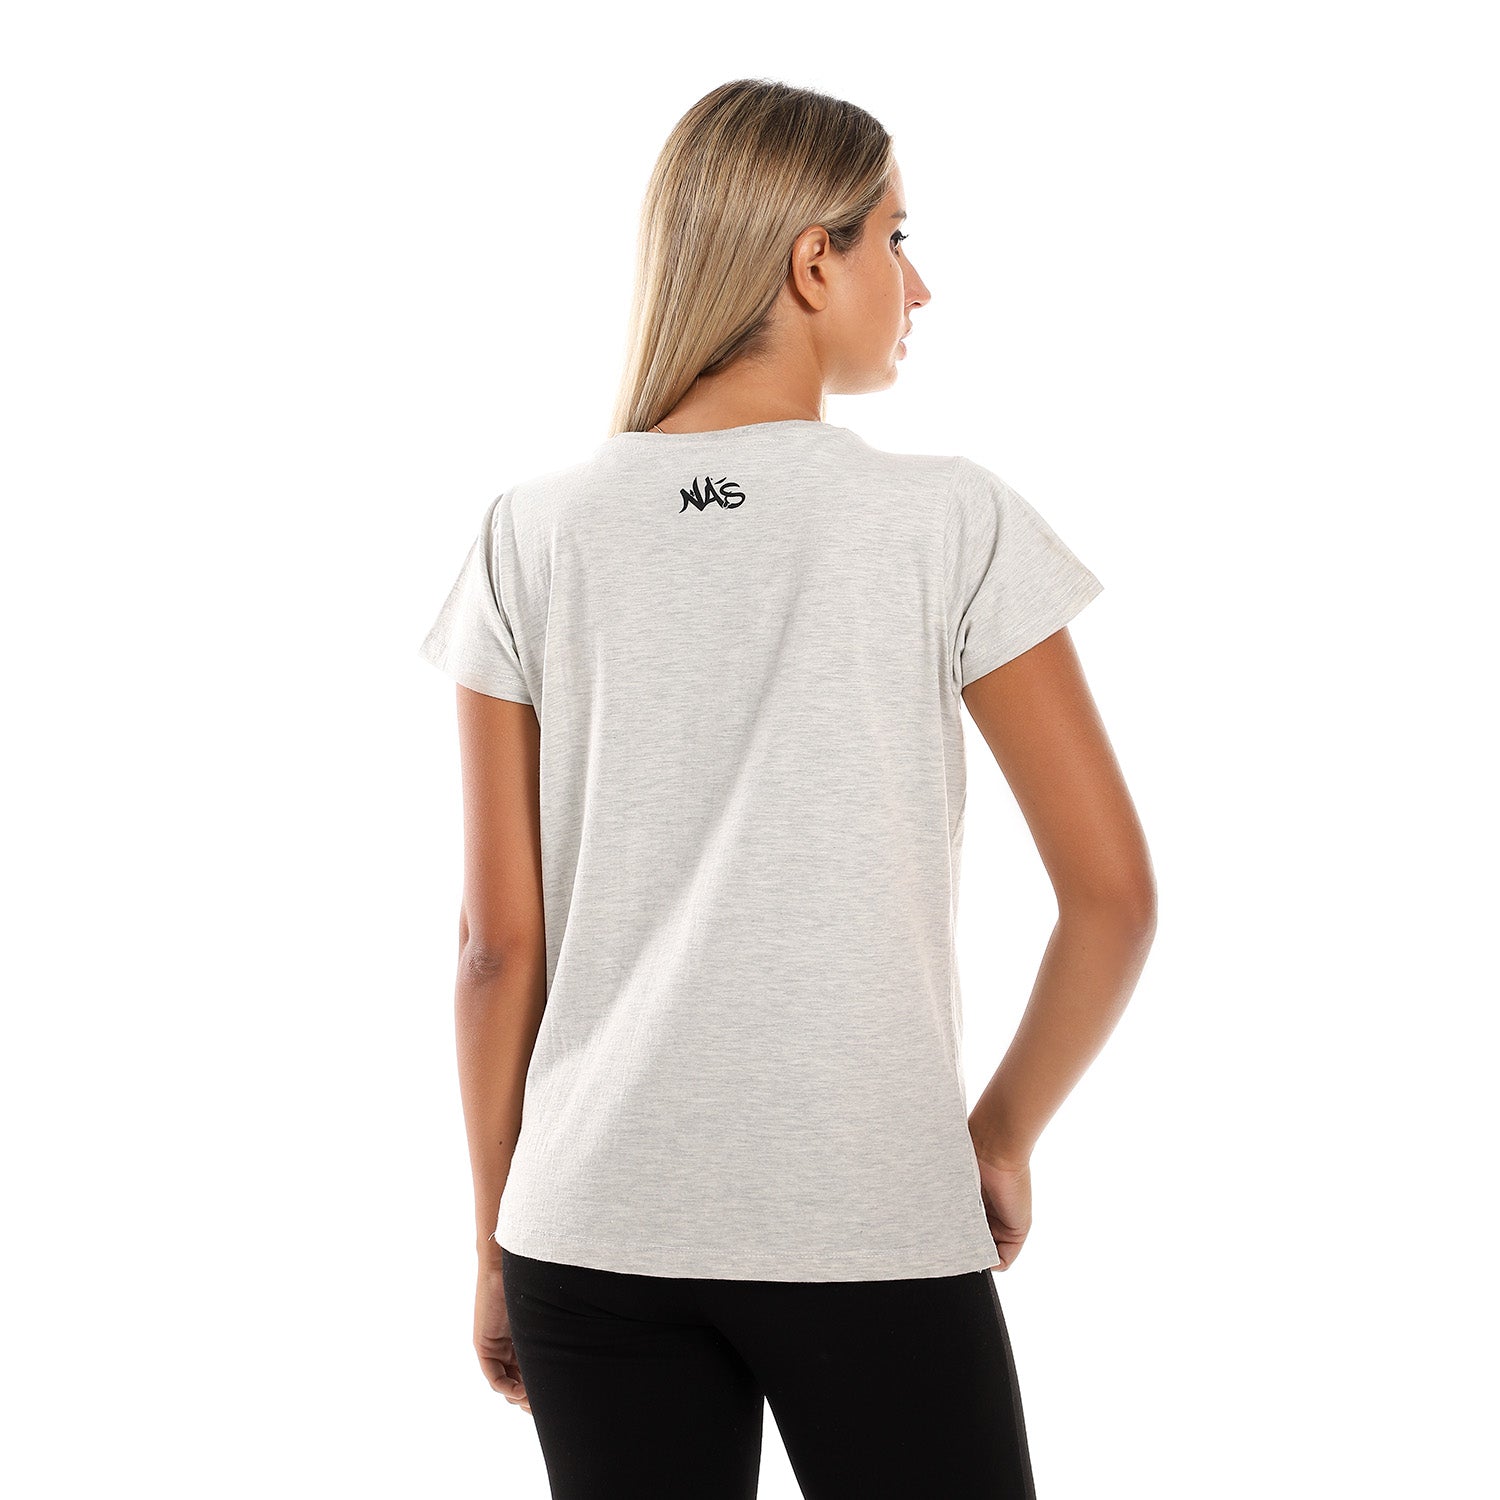 Insana Women SS T-shirt - Light Grey